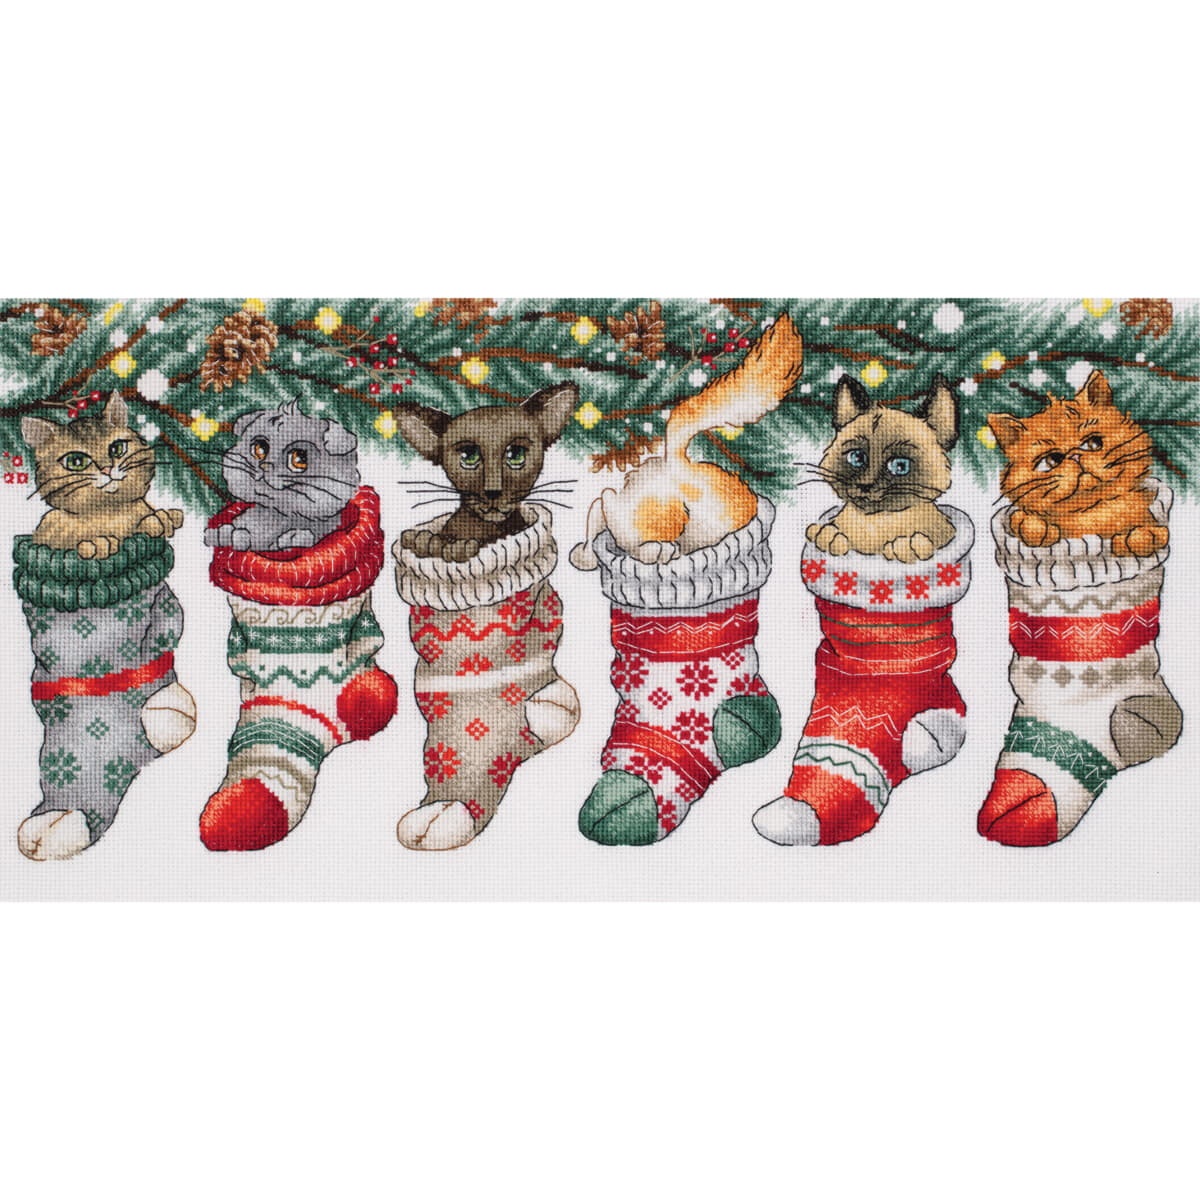 Panna telpakket "Christmas Cute Cats", 37x19,5cm